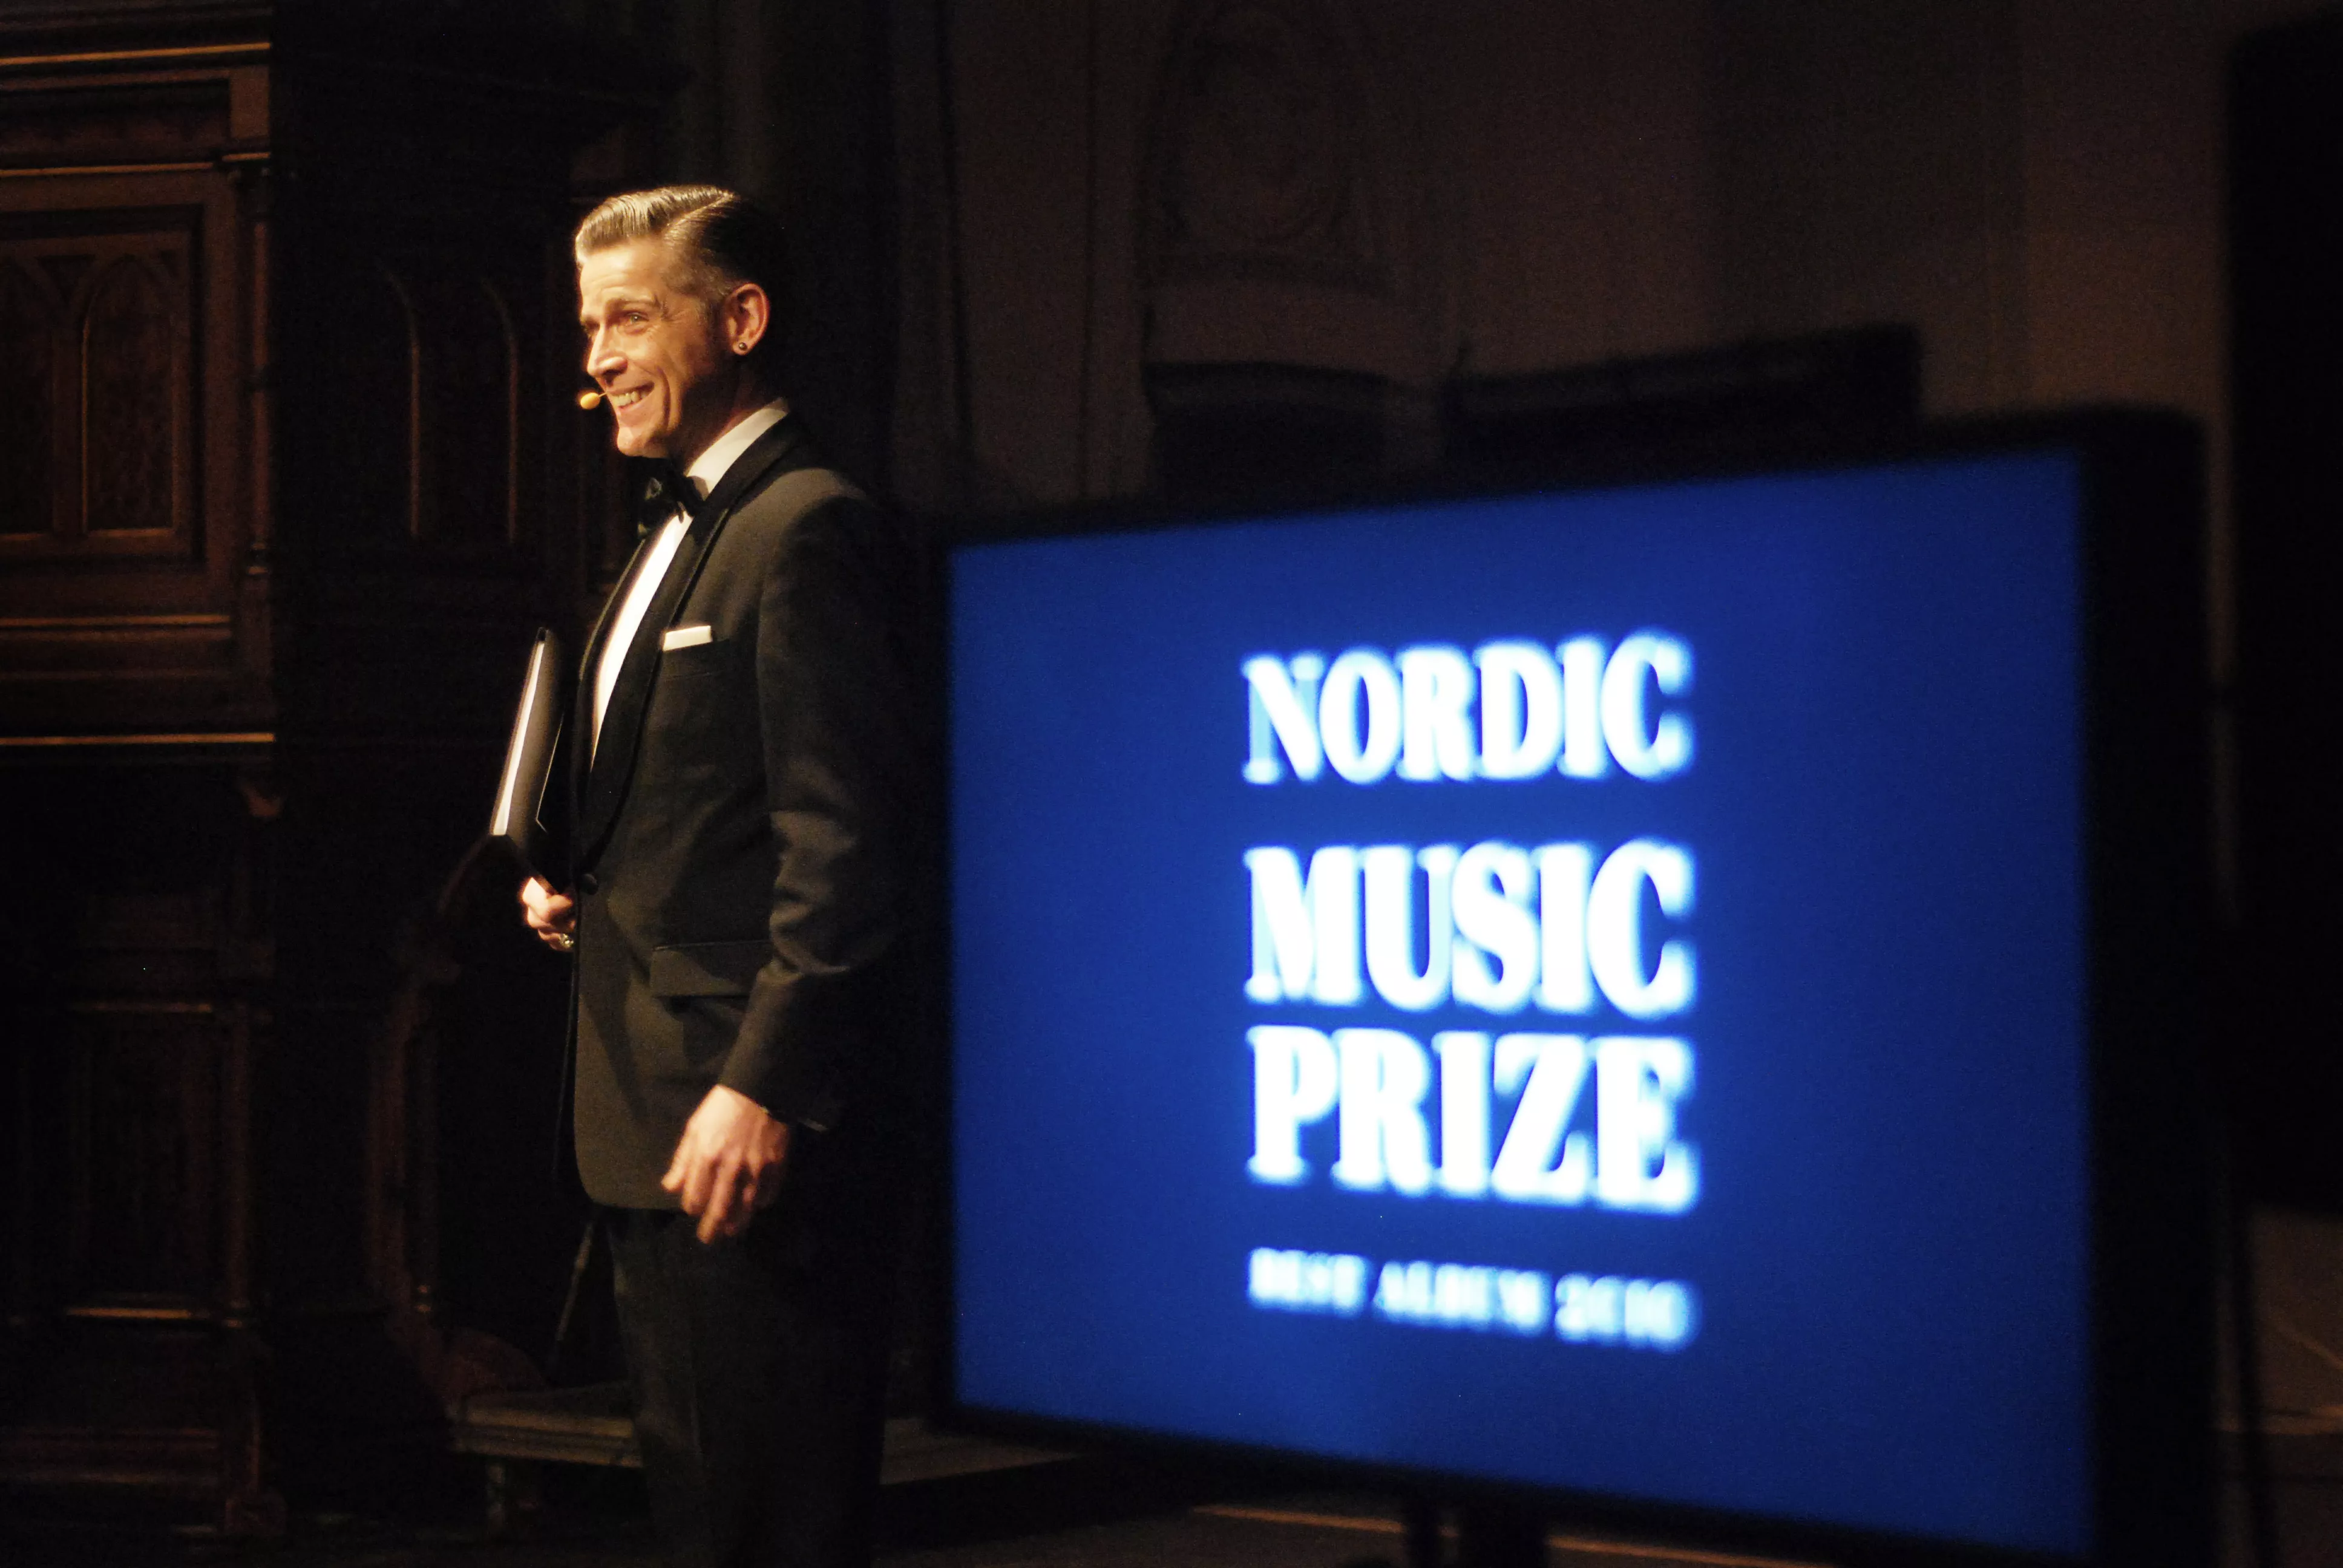 Nomineringarna klara för Nordic Music Prize 